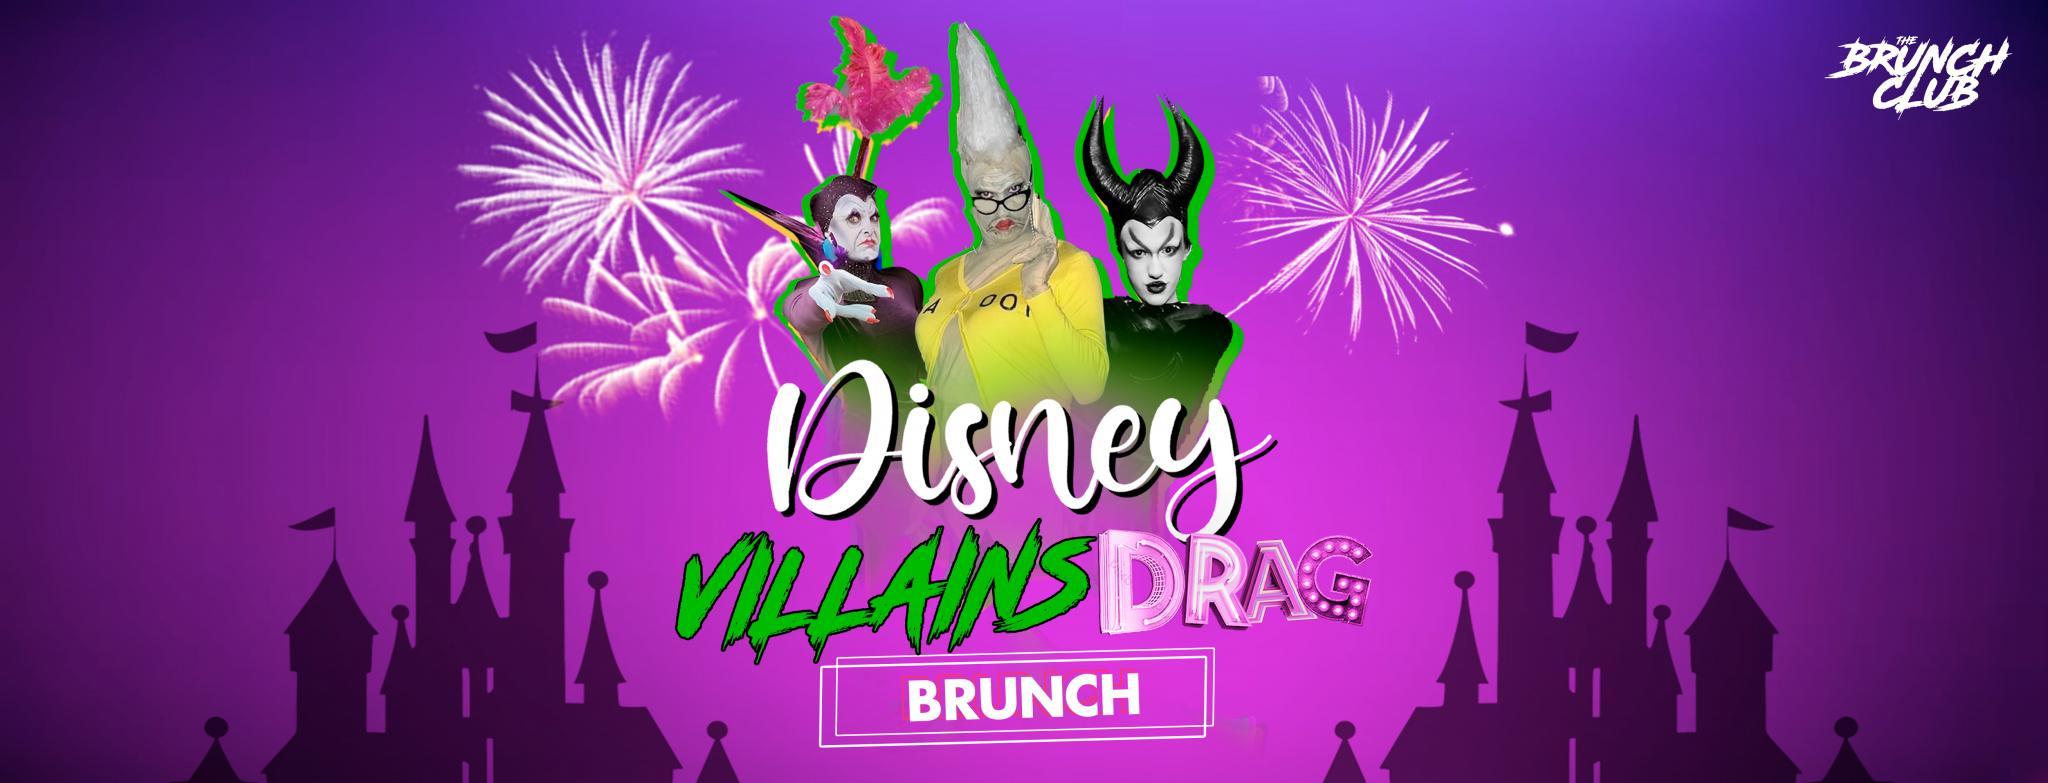 Disney Villains Drag Bottomless Brunch - Sheffield